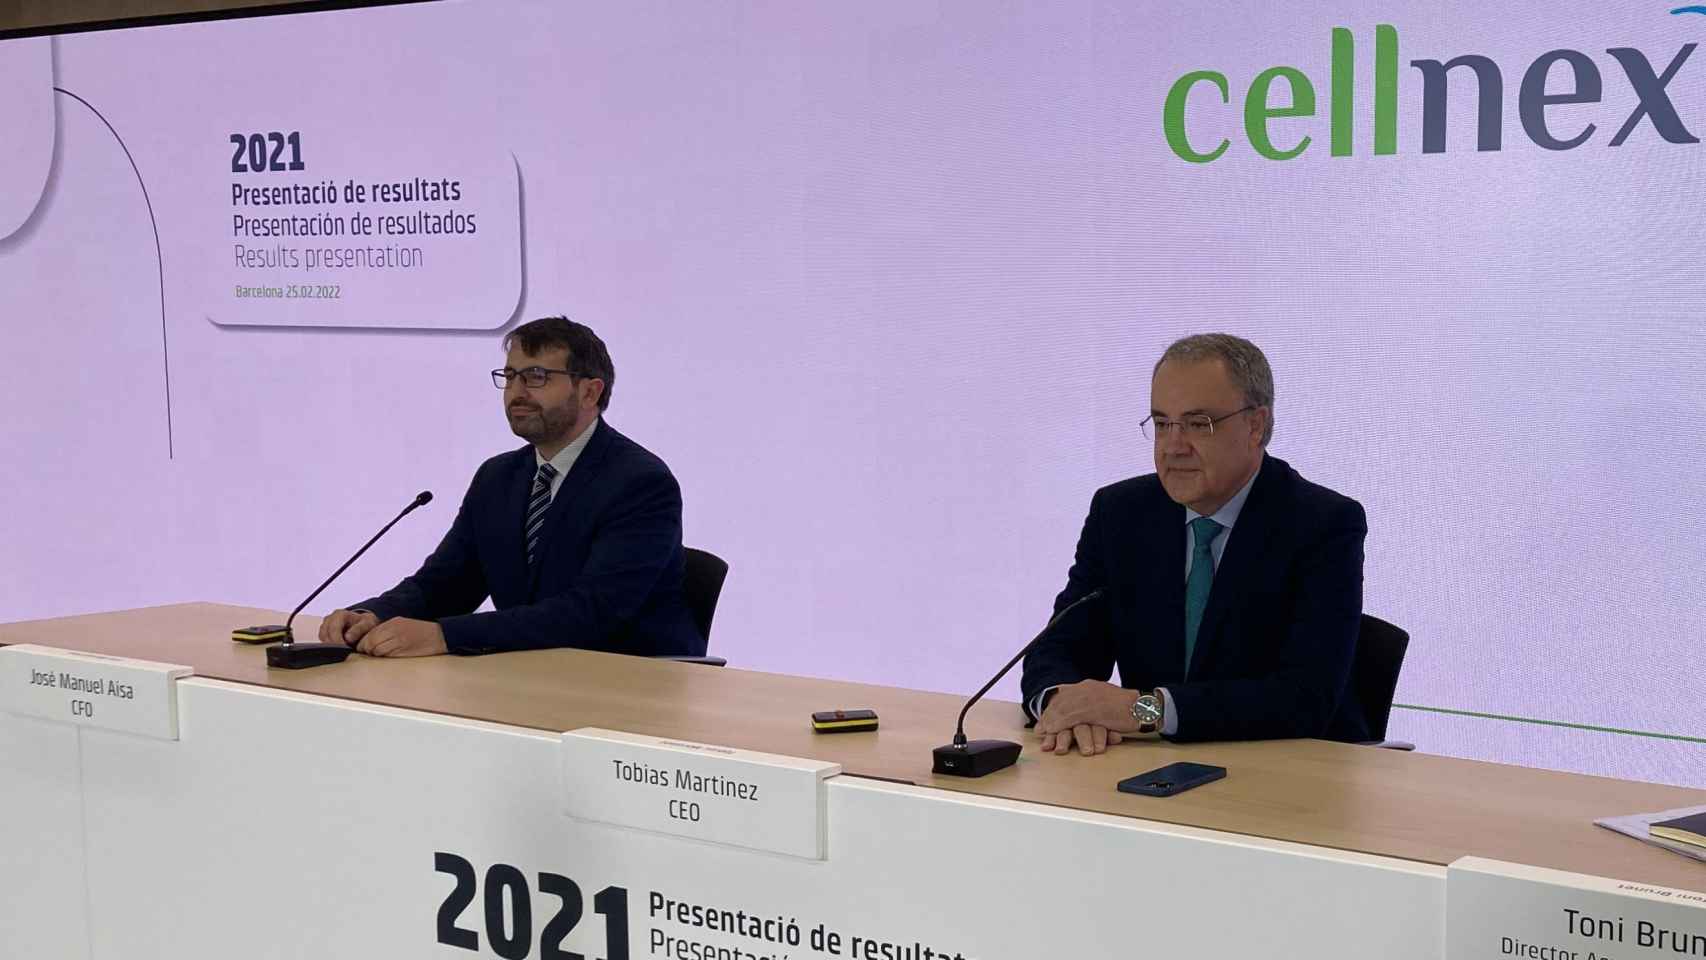 El director de Finanzas y Desarrollo Corporativo de Cellnex, José Manuel Aisa (i), el CEO de Cellnex Telecom, Tobías Martínez, en una rueda de prensa.